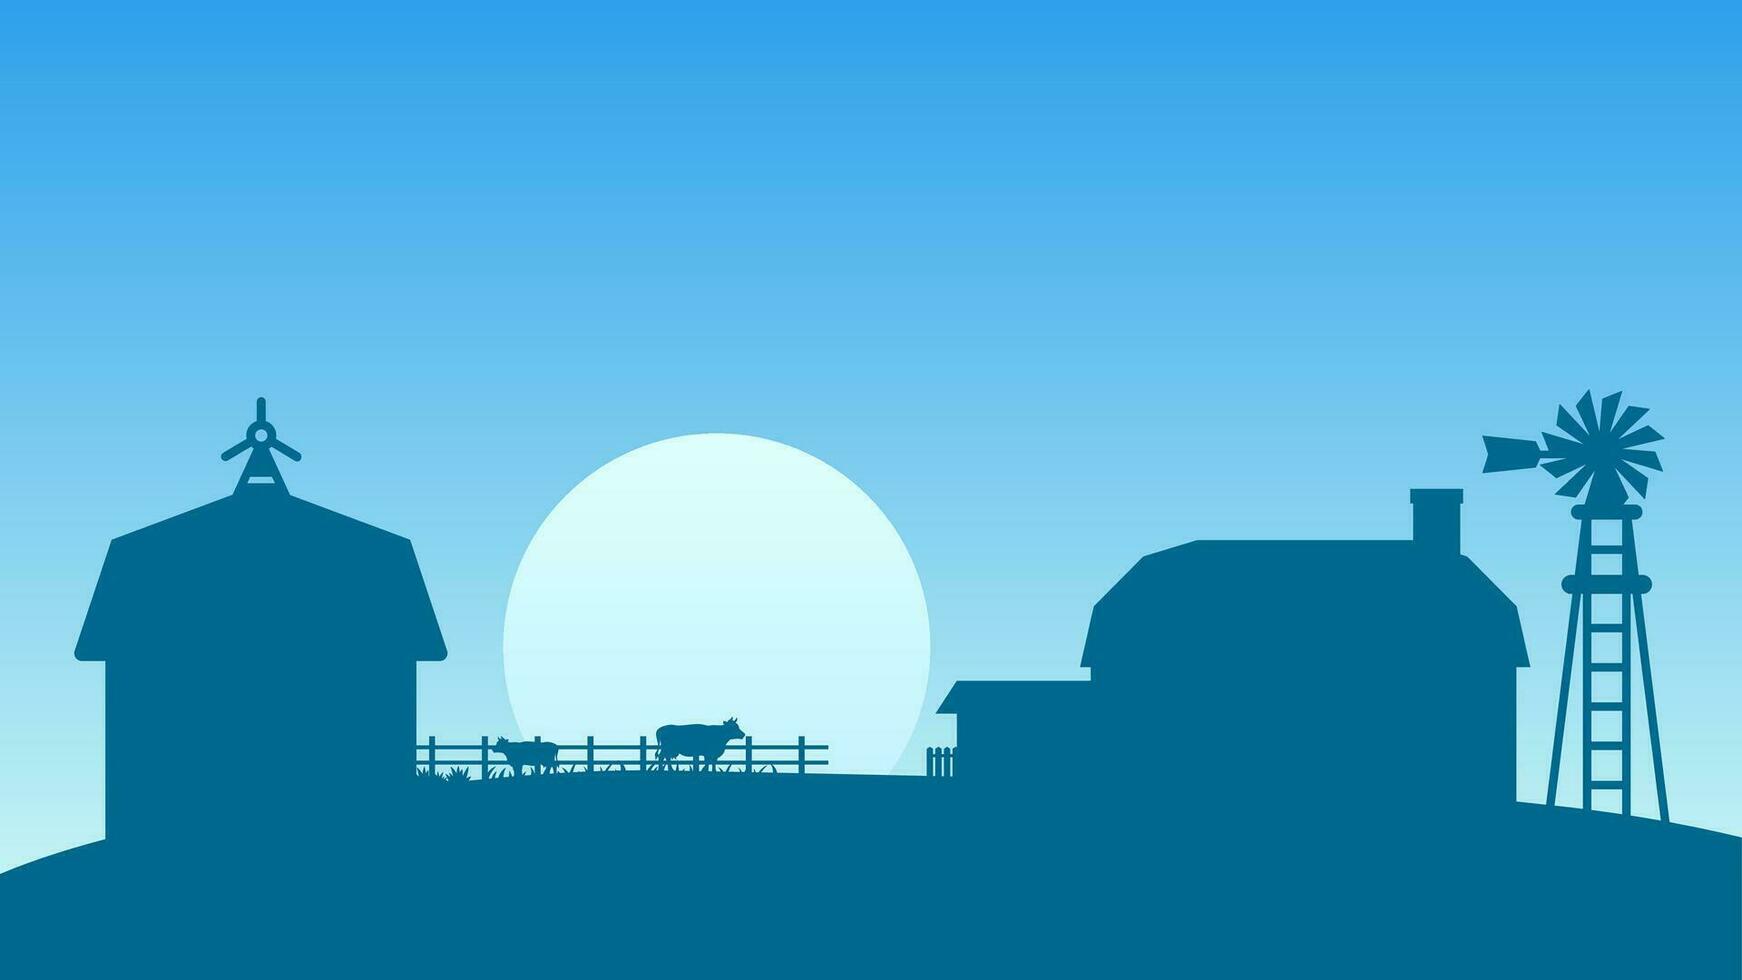 platteland boerderij landschap vector illustratie. silhouet van boerderij landschap met koe vee, schuur en windmolen. landelijk landbouw landschap voor achtergrond, behang of landen bladzijde